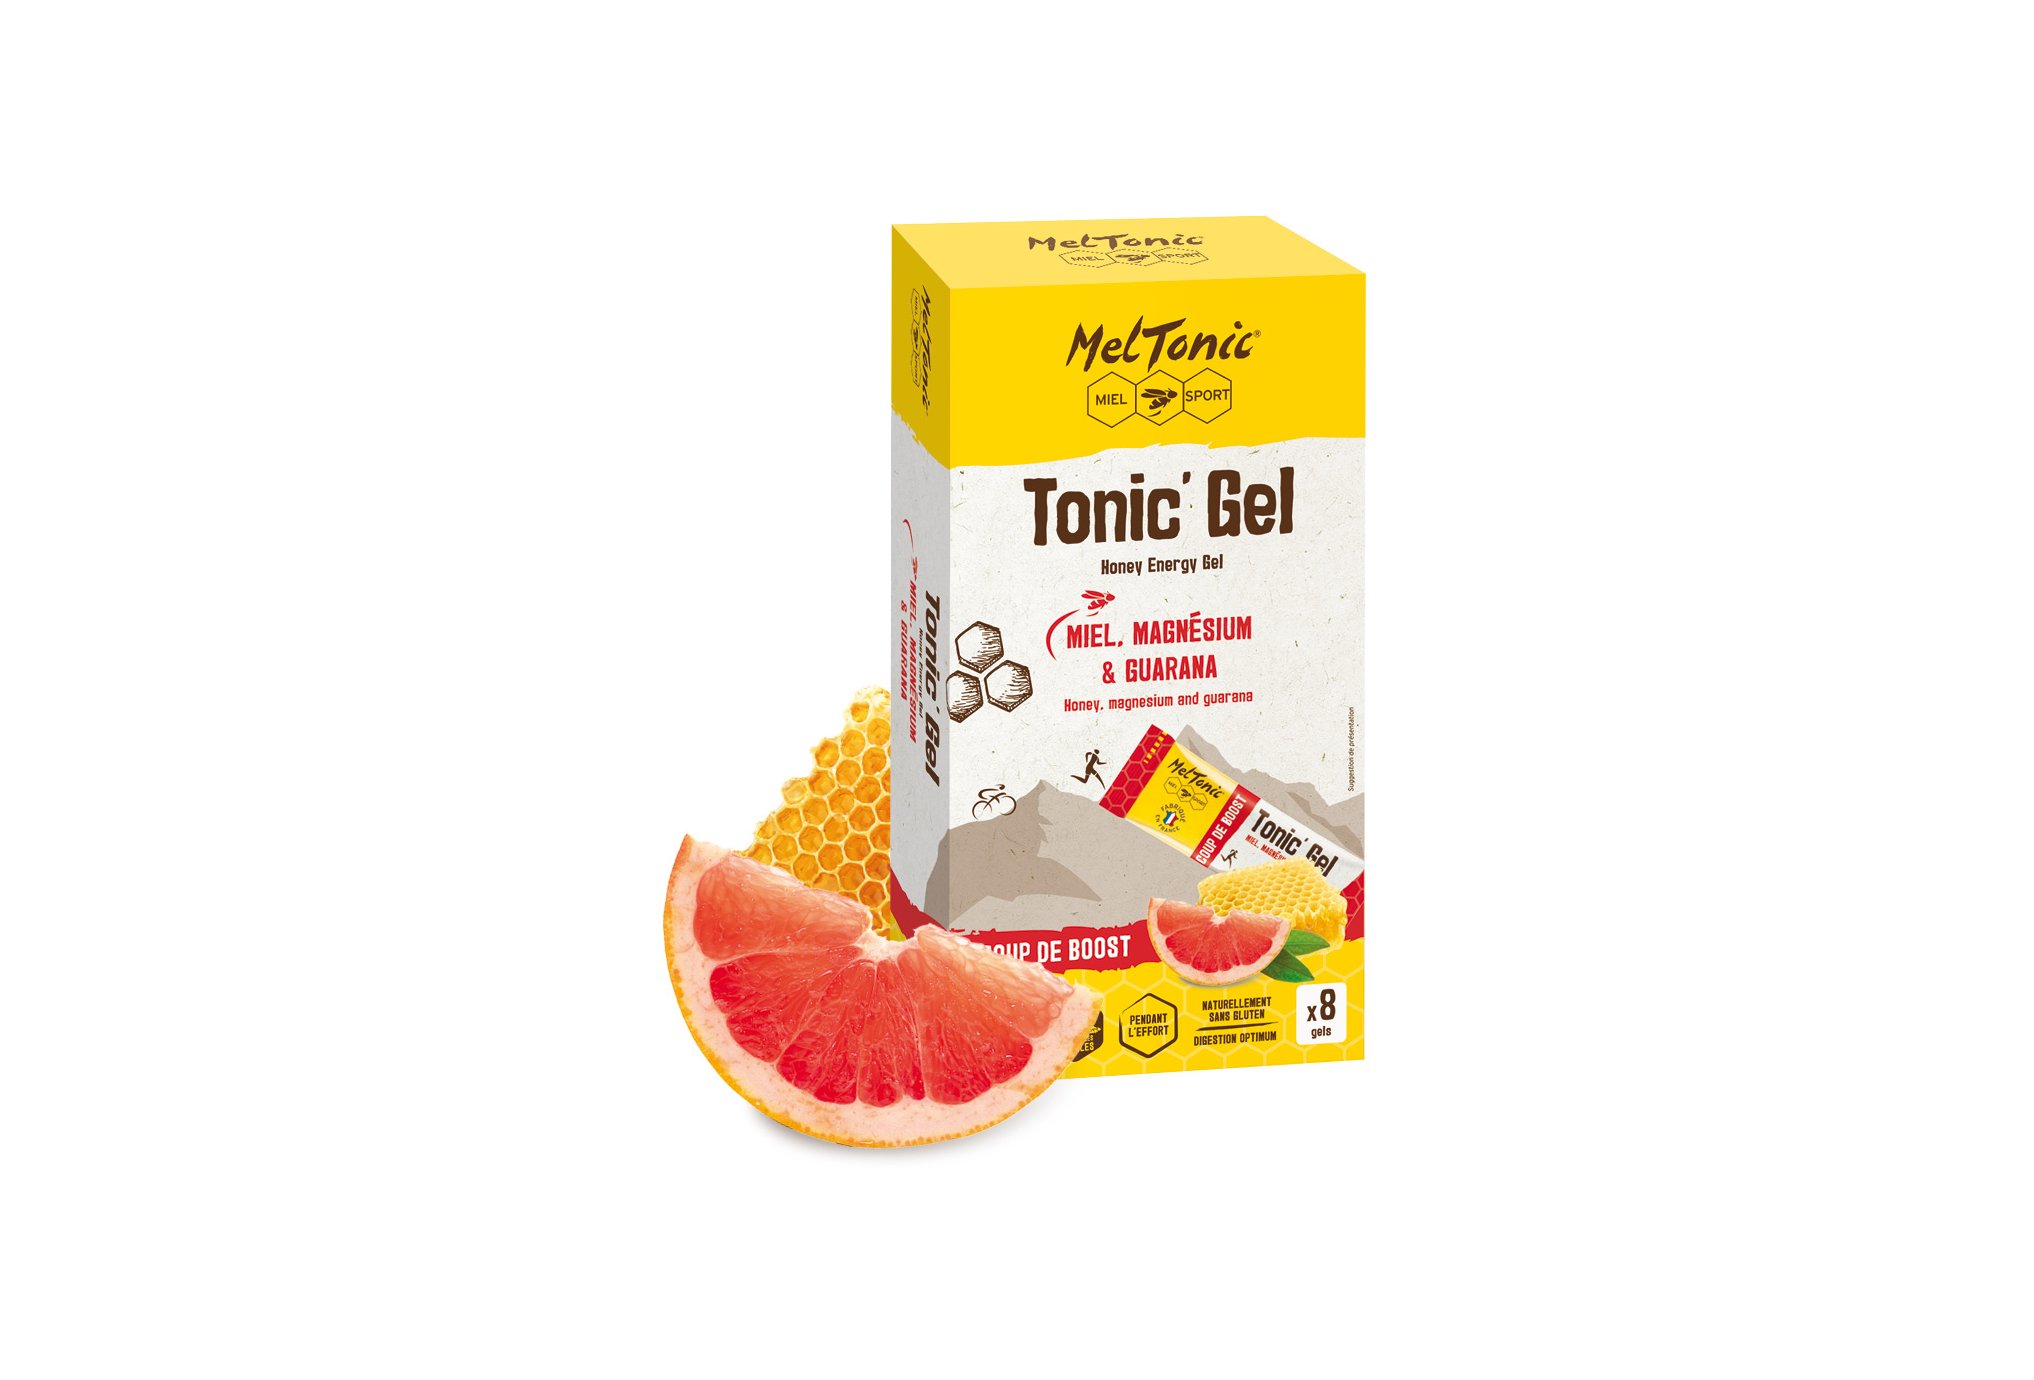 MelTonic Etui Tonic'Gel Coup de Boost Diététique Gels